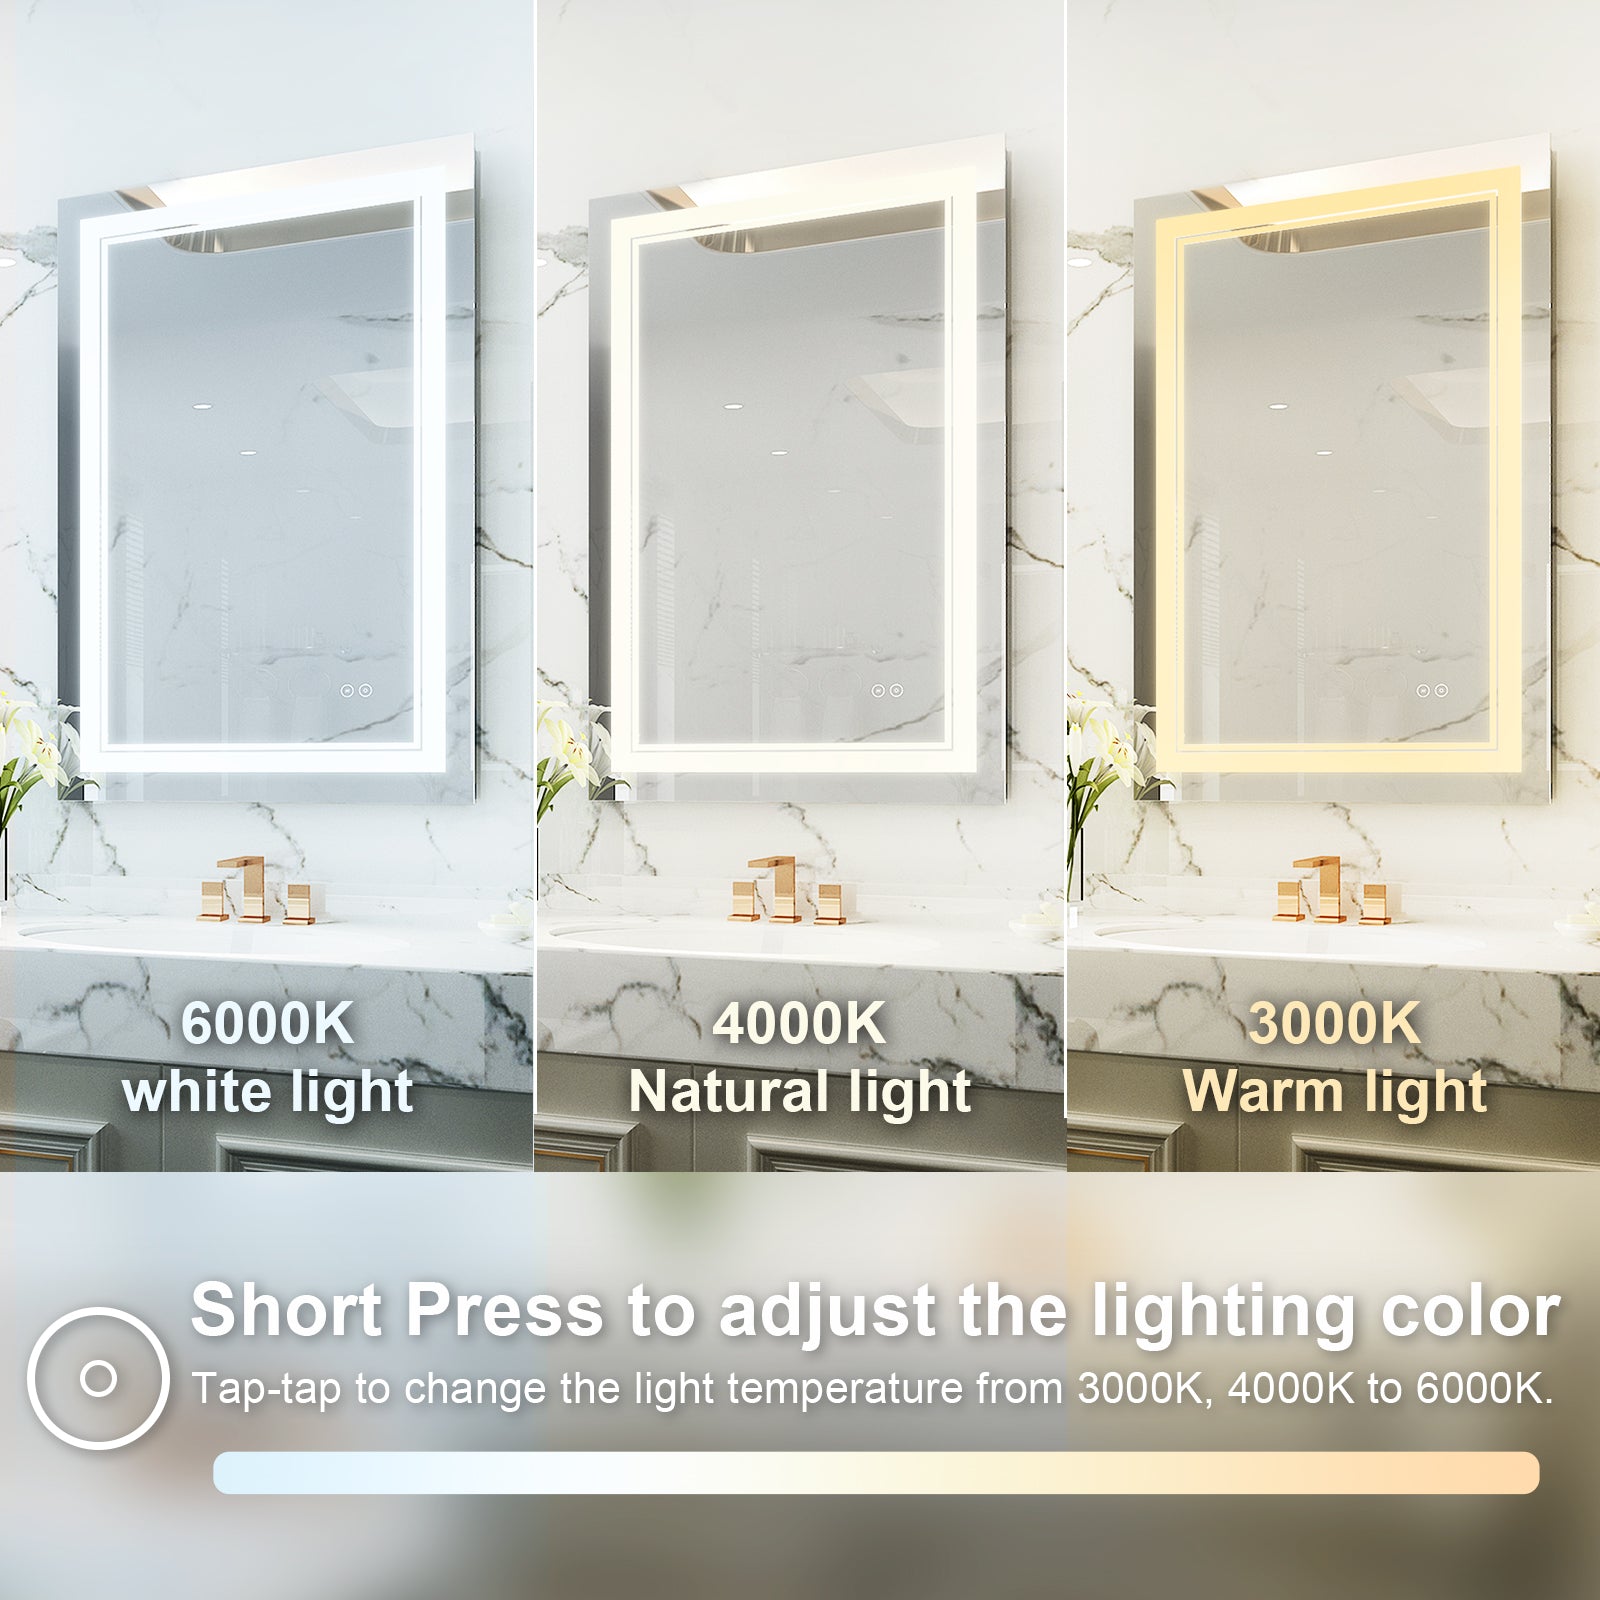 24 in. W x 36 in. H Rectangular Frameless Anti-Fog LED Light Dimmable Bathroom Vanity Mirror in Aluminum